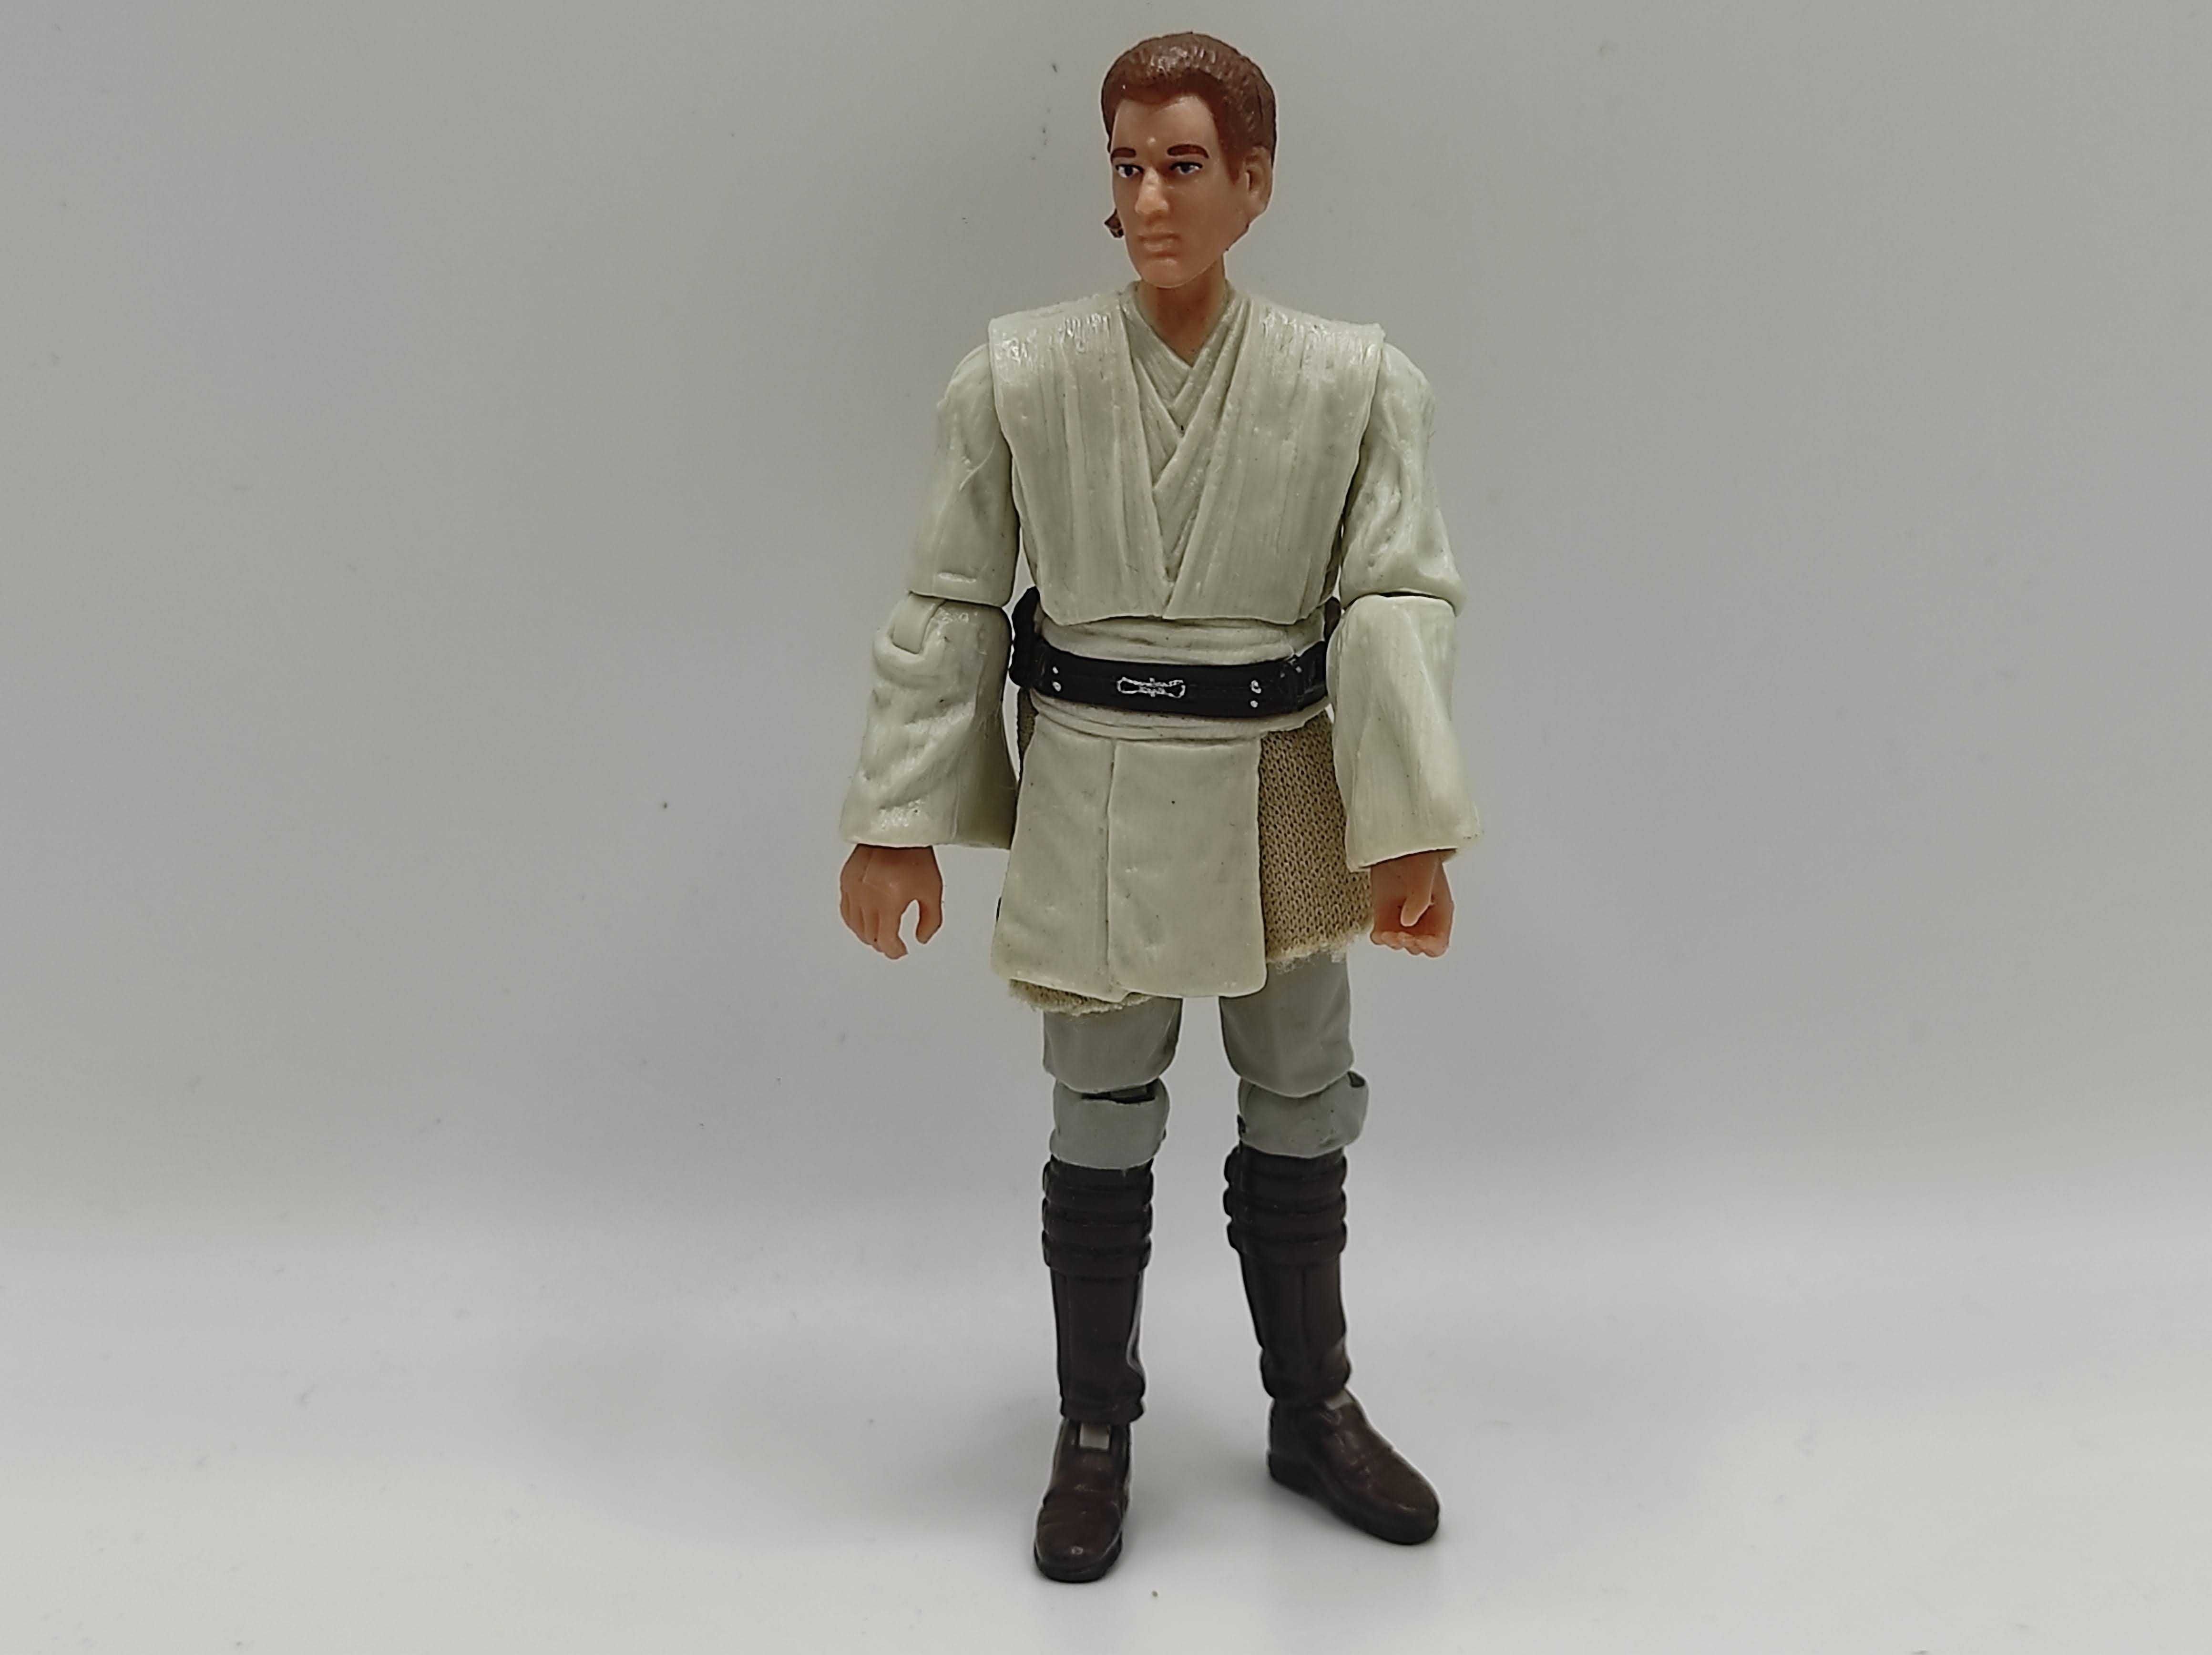 Zabawka figurka STAR WARS Obi-Wan Kenobi K4#61